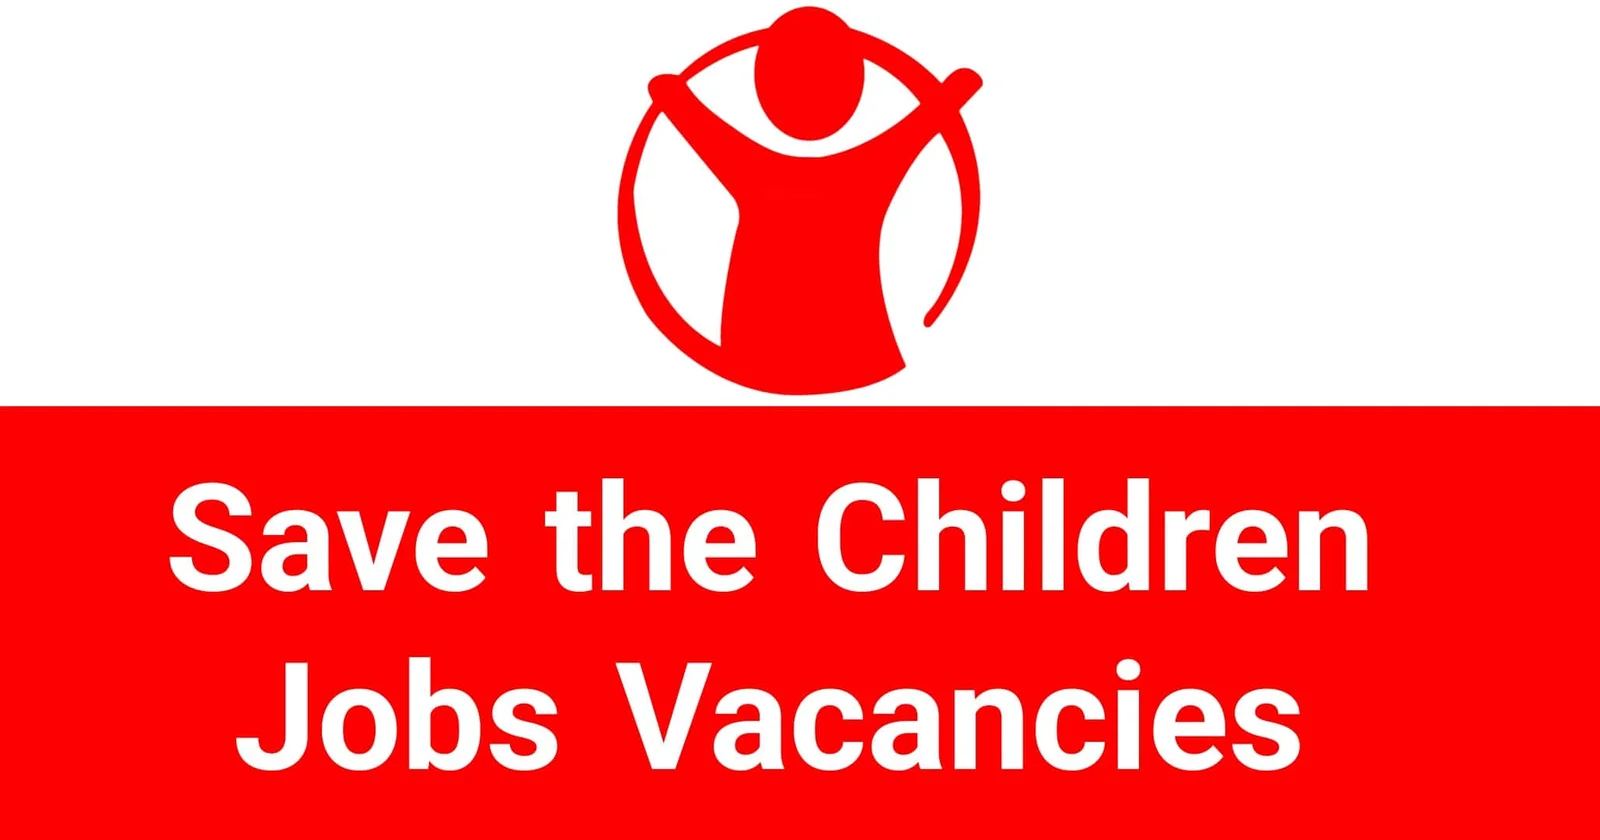 Save the Children Jobs Vacancies